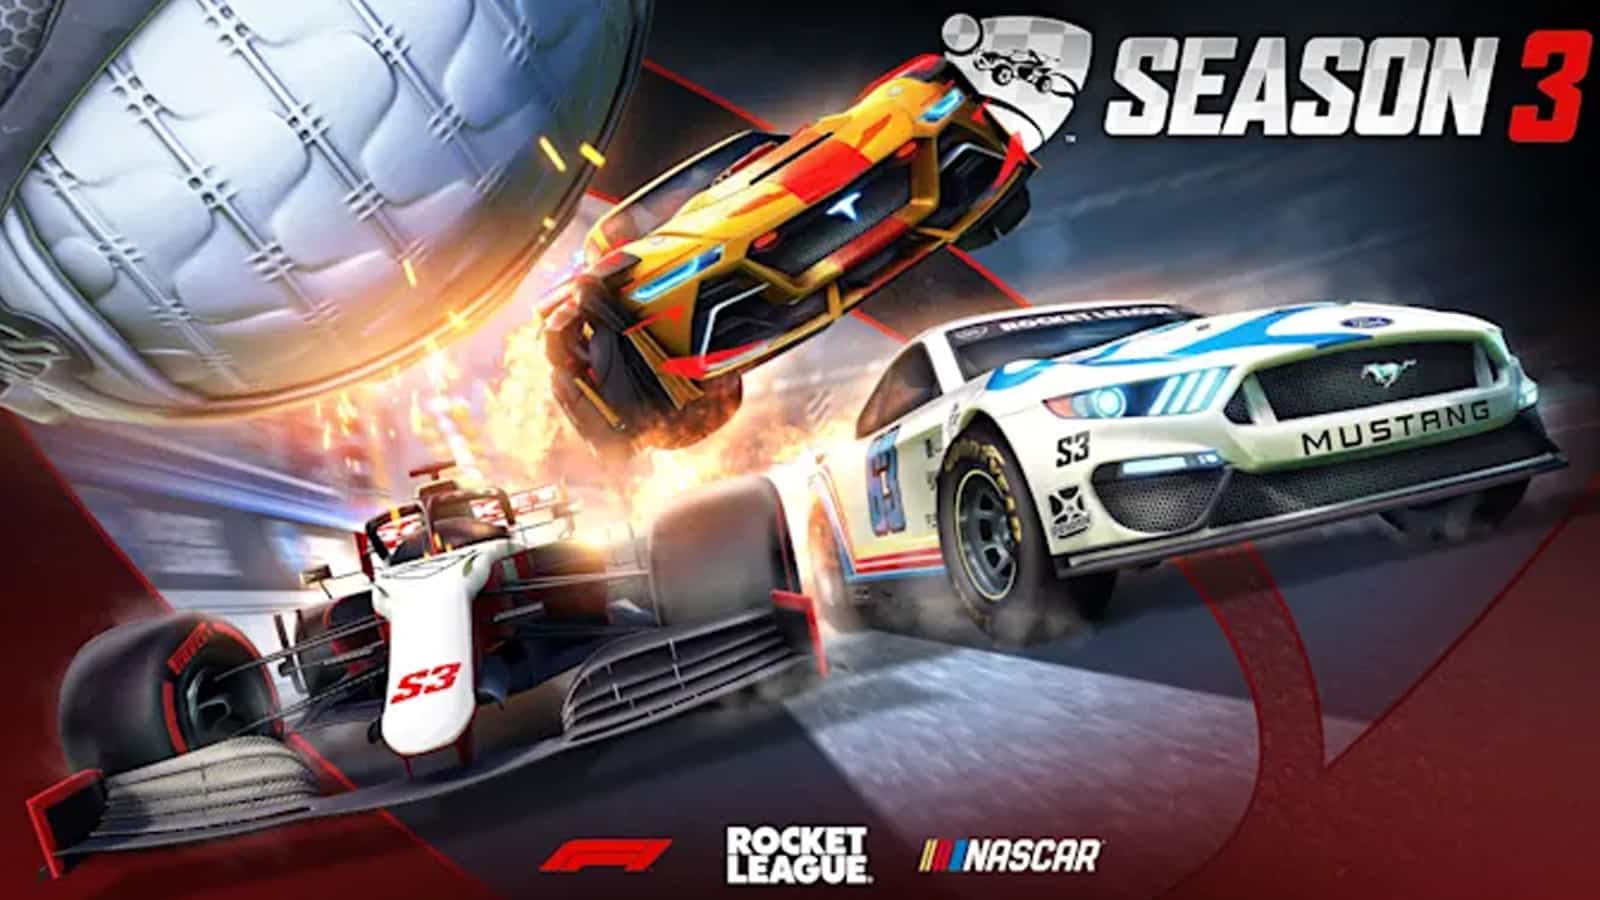 Rocket League Season 3 F1 NASCAR